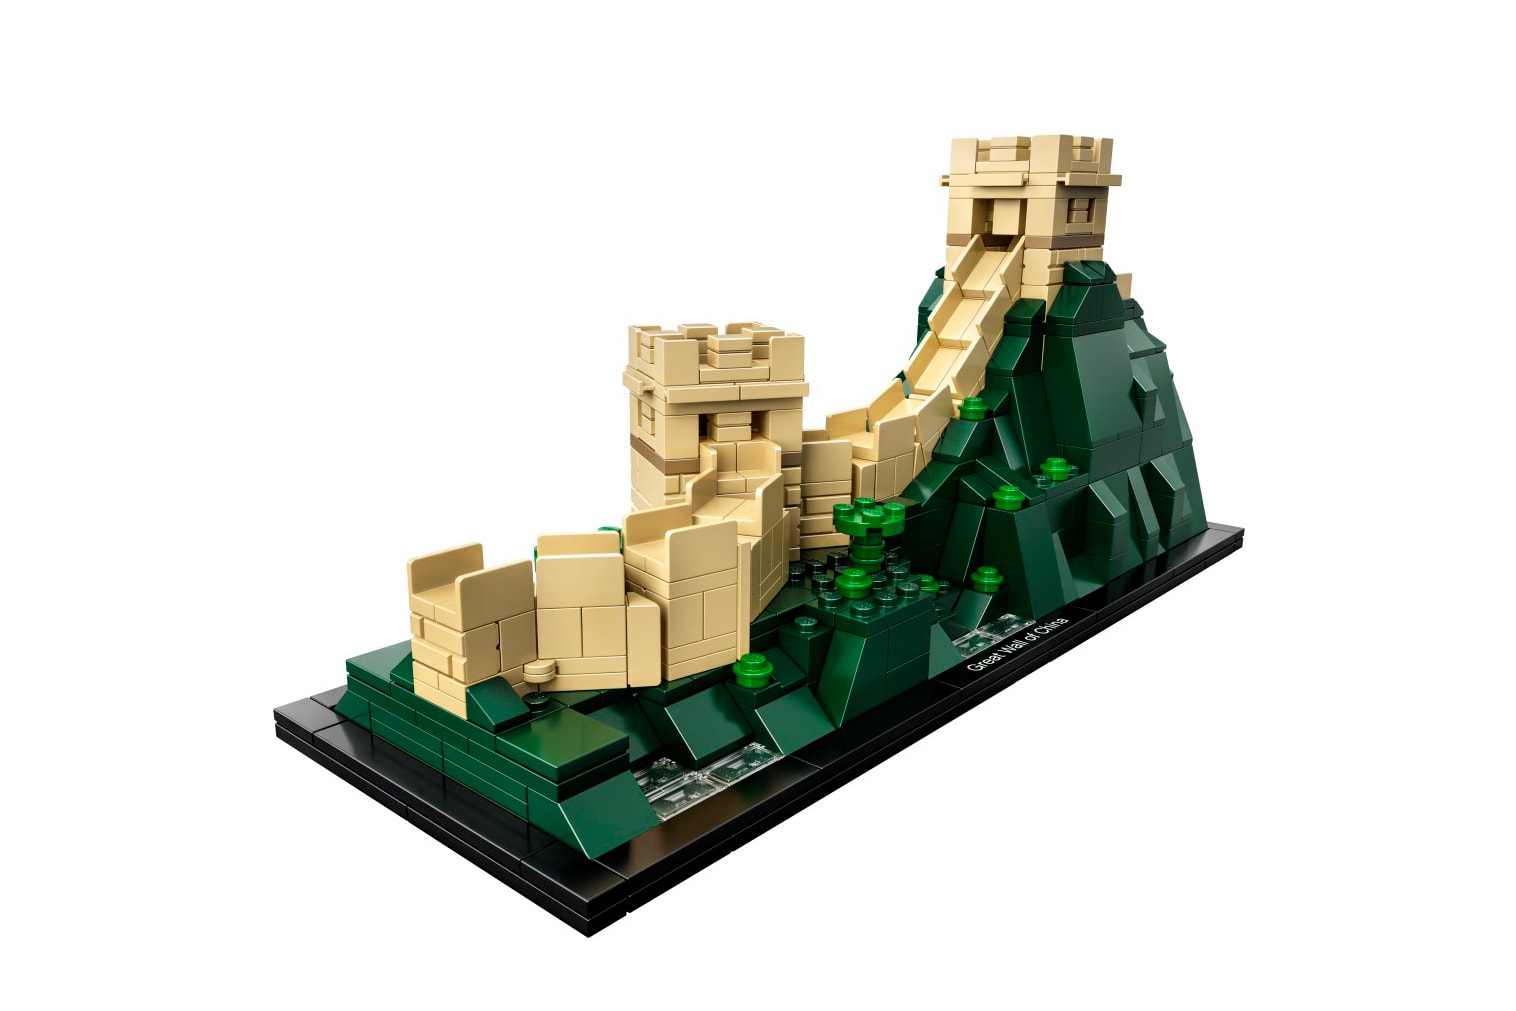 LEGO Architecture 即將推出中國萬里長城及美國自由神像